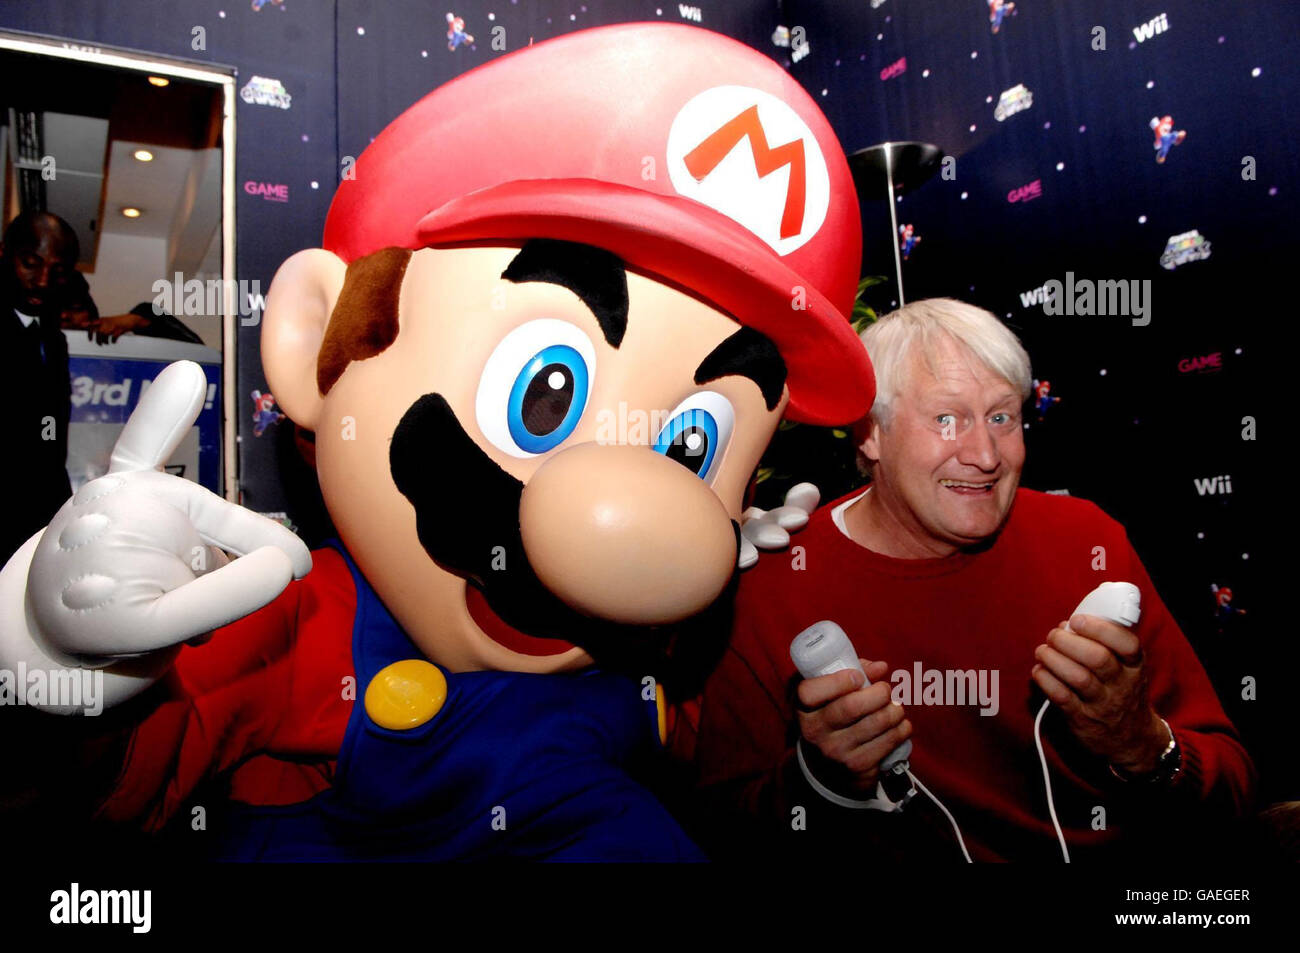 Die Stimme von Super Mario, Charles Martinet, posiert mit mario im SPIEL Oxford Street, im Zentrum von London, am Abend, an dem Super Mario Galaxy auf der Nintendo Wii in Großbritannien verkauft wird. Stockfoto